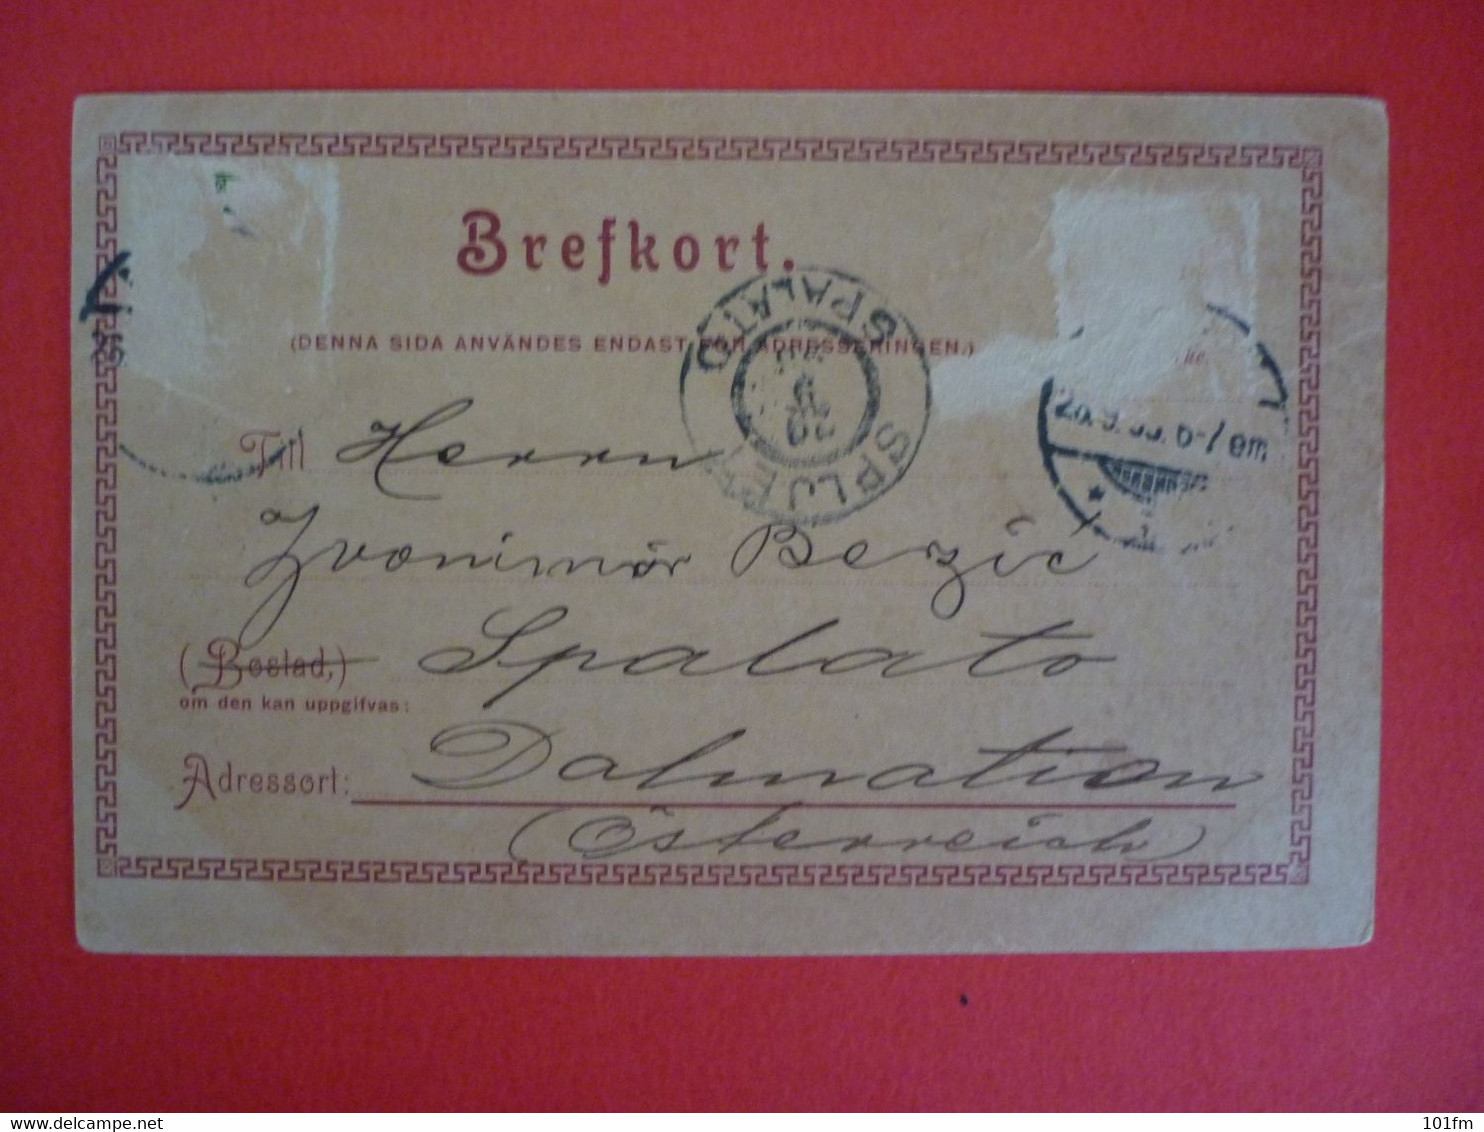 SWEDEN - MALMOHUS SLOTT - HELSNING FRAN MALMO 1898 , OLD LITHO - Sweden